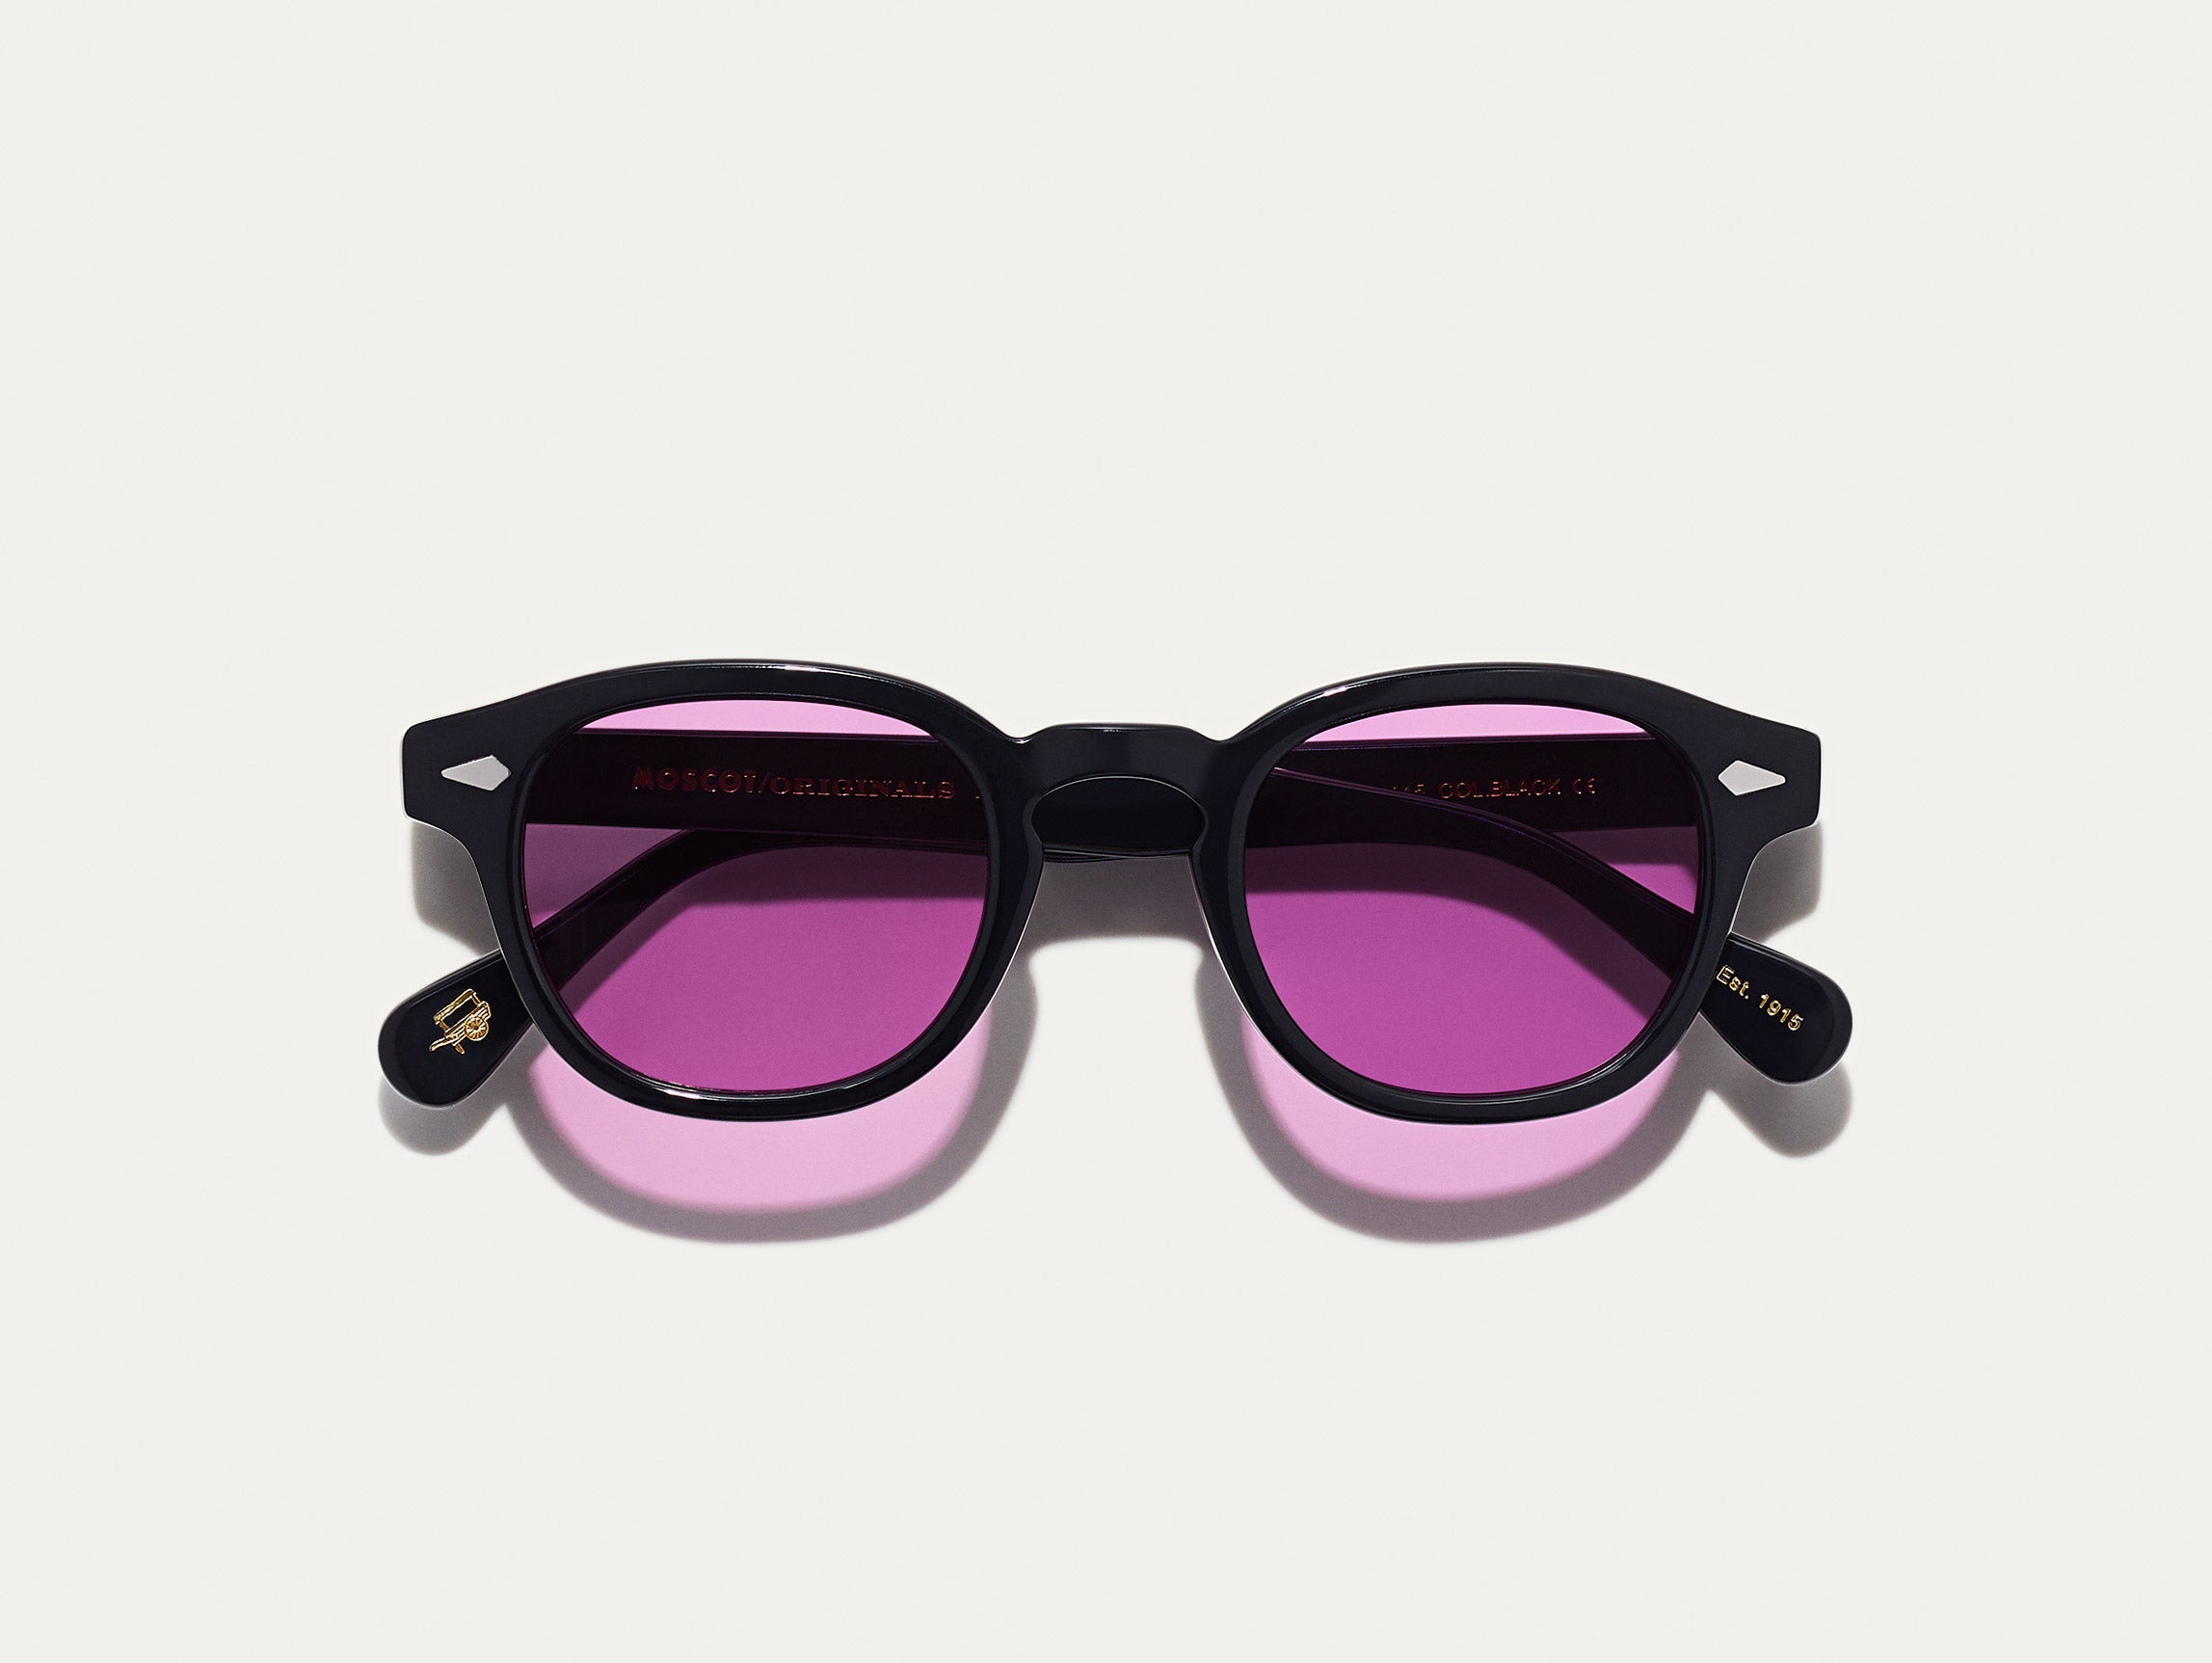 #color_purple nurple | The LEMTOSH Black with Purple Nurple Tinted Lenses